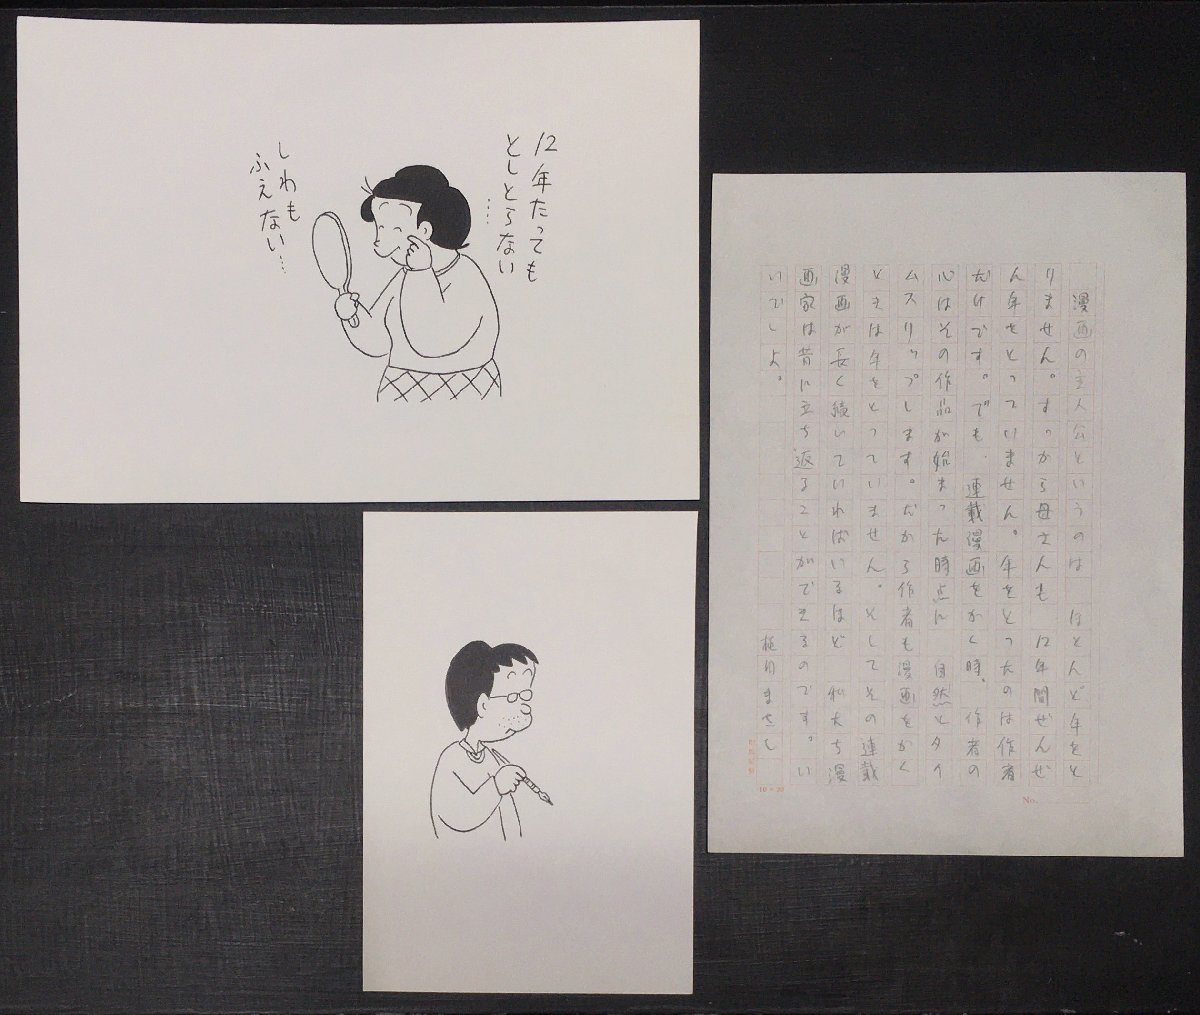 保证真实：2 幅手绘插图和 1 幅由上田正史绘制的手绘草稿, 漫画, 动漫周边, 符号, 签名